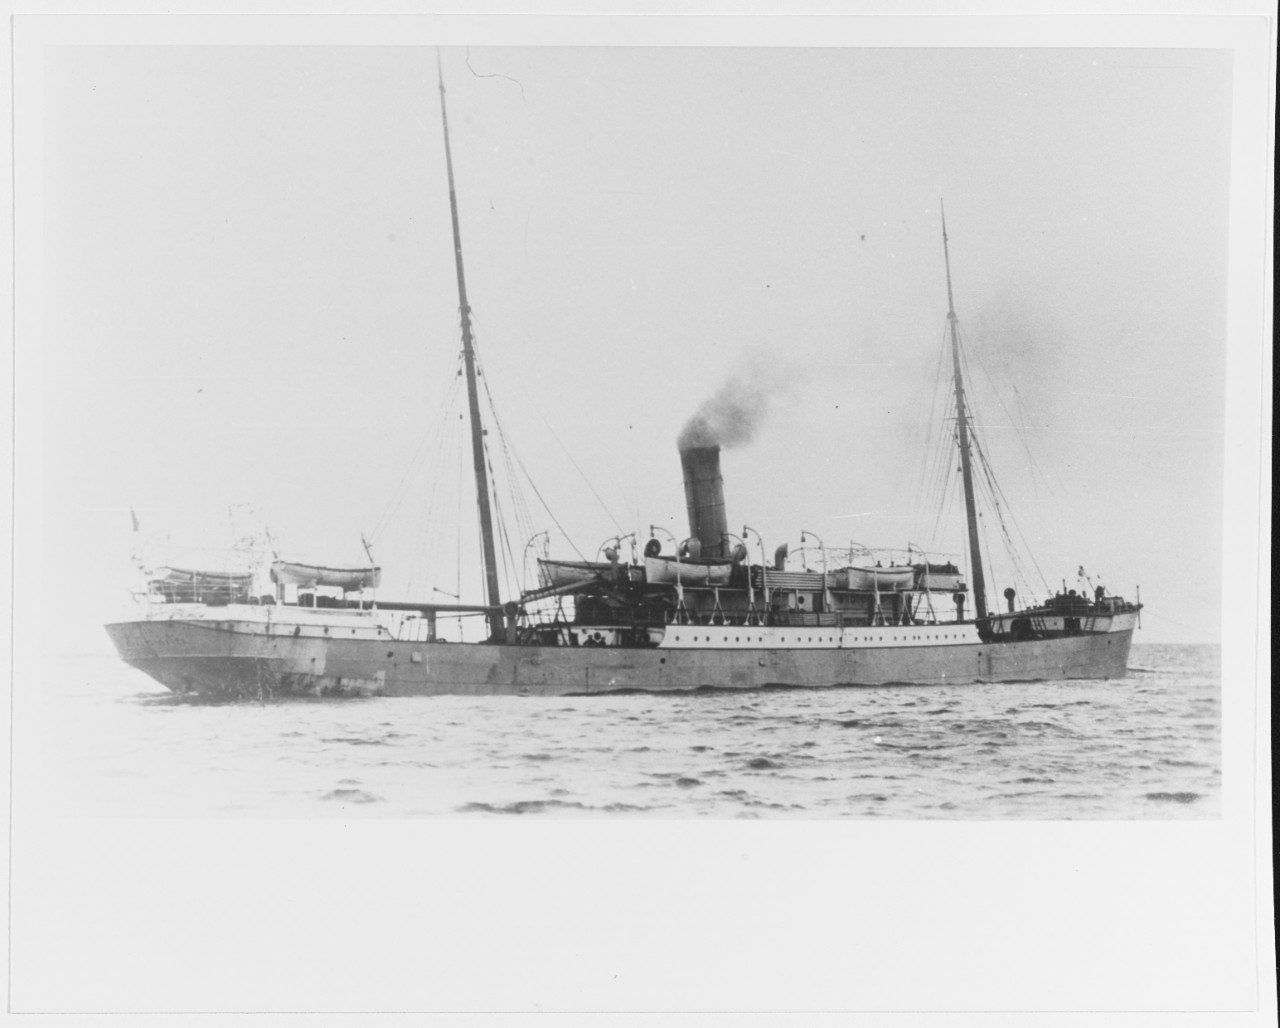 ASIA (Russian merchant ship, 1890)